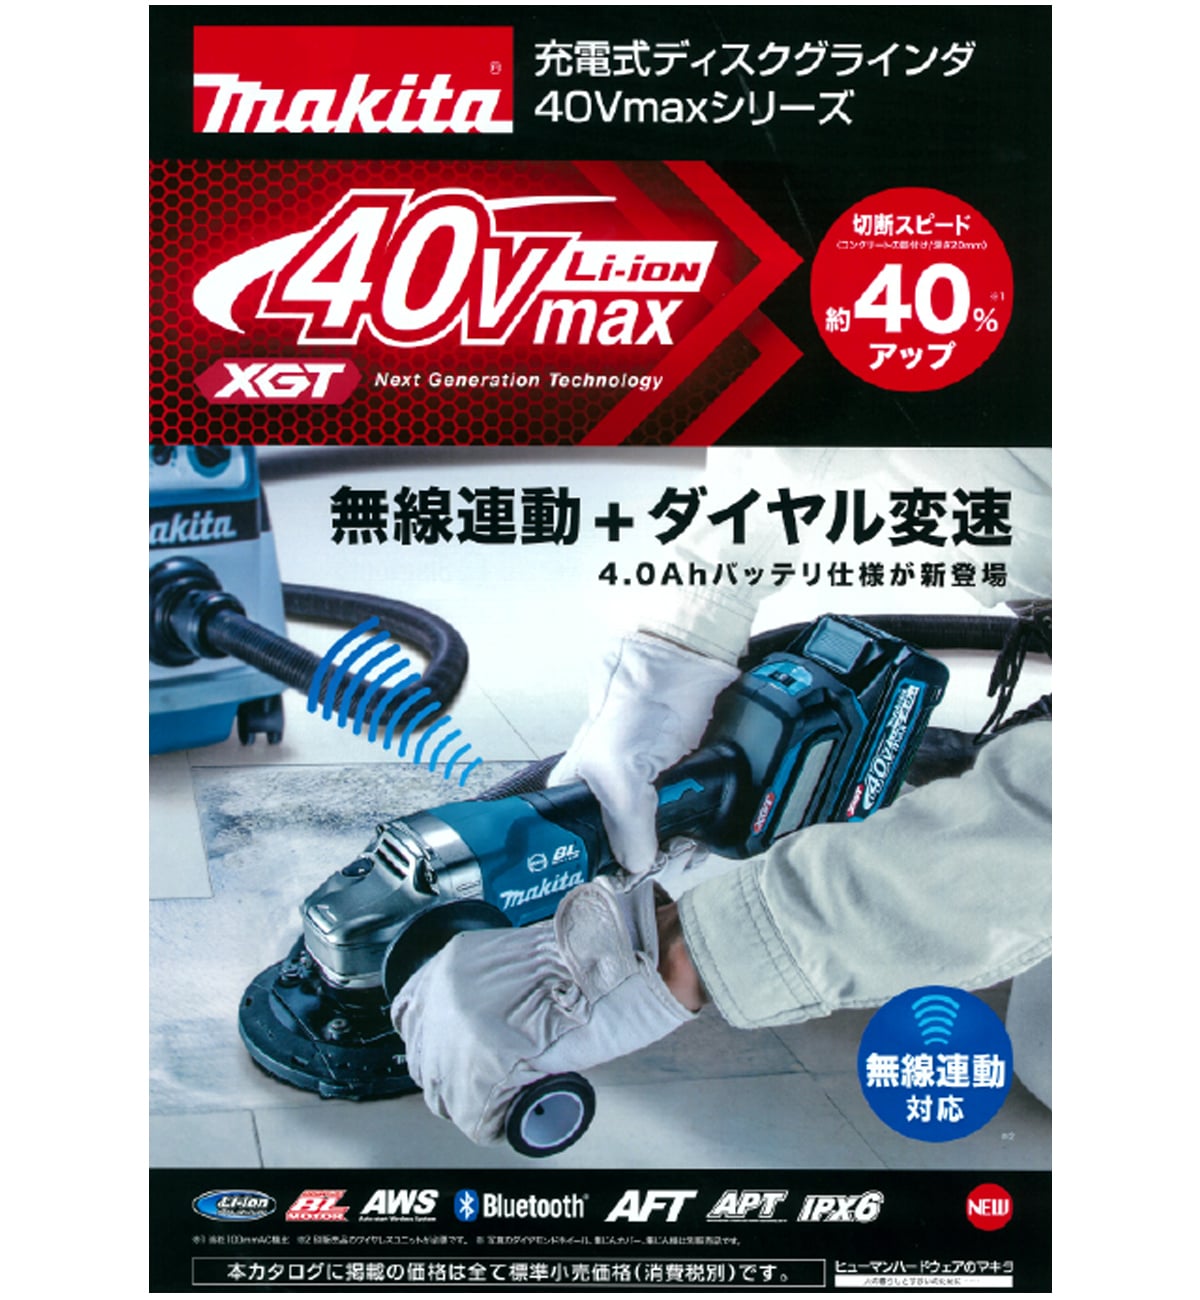 マキタ GA020GRMX 40Vmax充電式ディスクグラインダ125mm ウエダ金物【公式サイト】